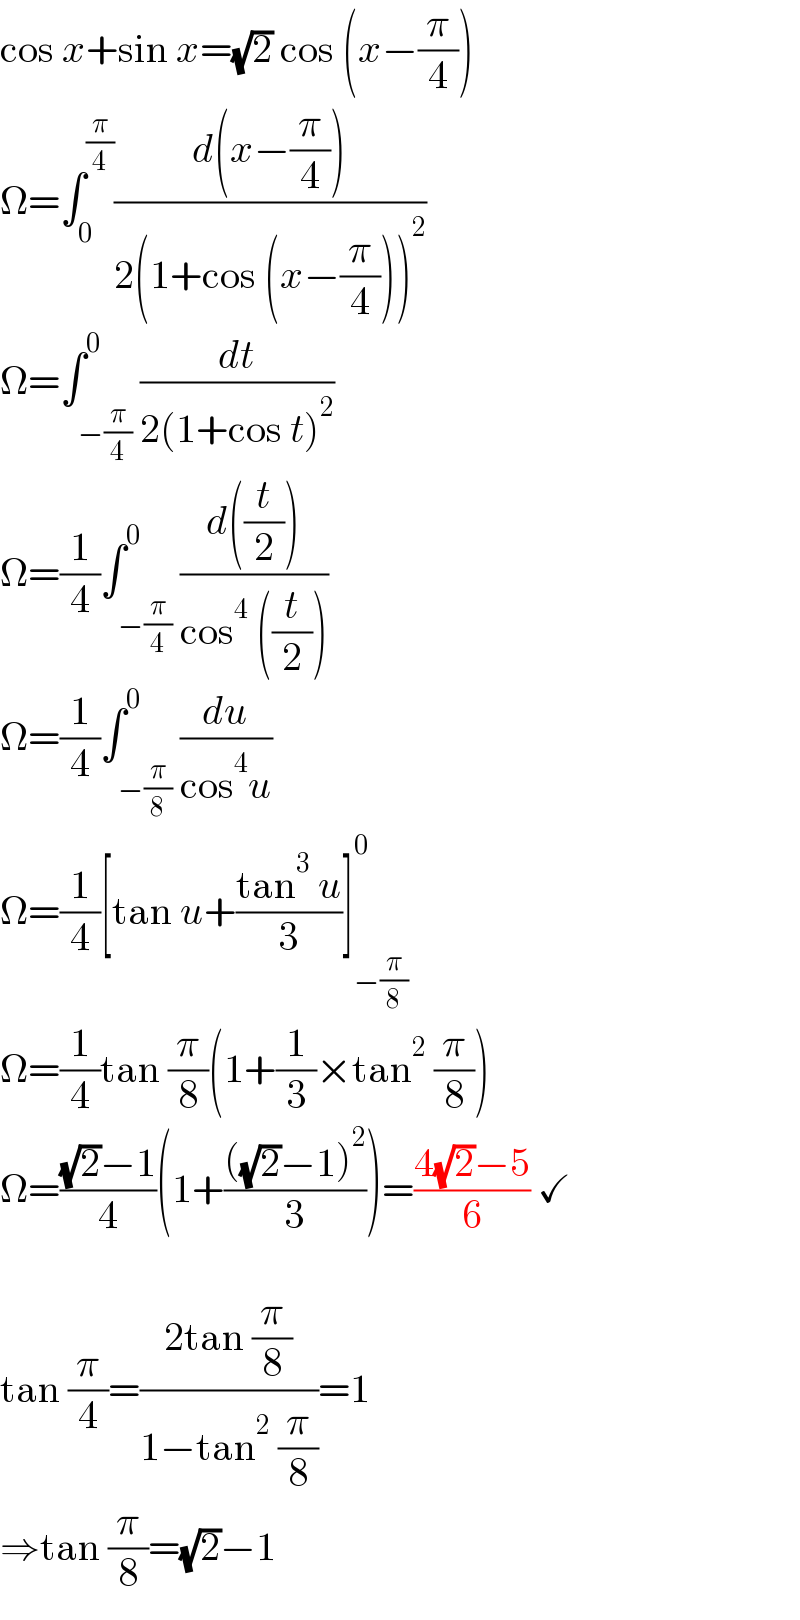 cos x+sin x=(√2) cos (x−(π/4))  Ω=∫_0 ^(π/4) ((d(x−(π/4)))/(2(1+cos (x−(π/4)))^2 ))  Ω=∫_(−(π/4)) ^0 (dt/(2(1+cos t)^2 ))  Ω=(1/4)∫_(−(π/4)) ^0 ((d((t/2)))/(cos^4  ((t/2))))  Ω=(1/4)∫_(−(π/8)) ^0 (du/(cos^4 u))  Ω=(1/4)[tan u+((tan^3  u)/3)]_(−(π/8)) ^0   Ω=(1/4)tan (π/8)(1+(1/3)×tan^2  (π/8))  Ω=(((√2)−1)/4)(1+((((√2)−1)^2 )/3))=((4(√2)−5)/6) ✓    tan (π/4)=((2tan (π/8))/(1−tan^2  (π/8)))=1  ⇒tan (π/8)=(√2)−1  